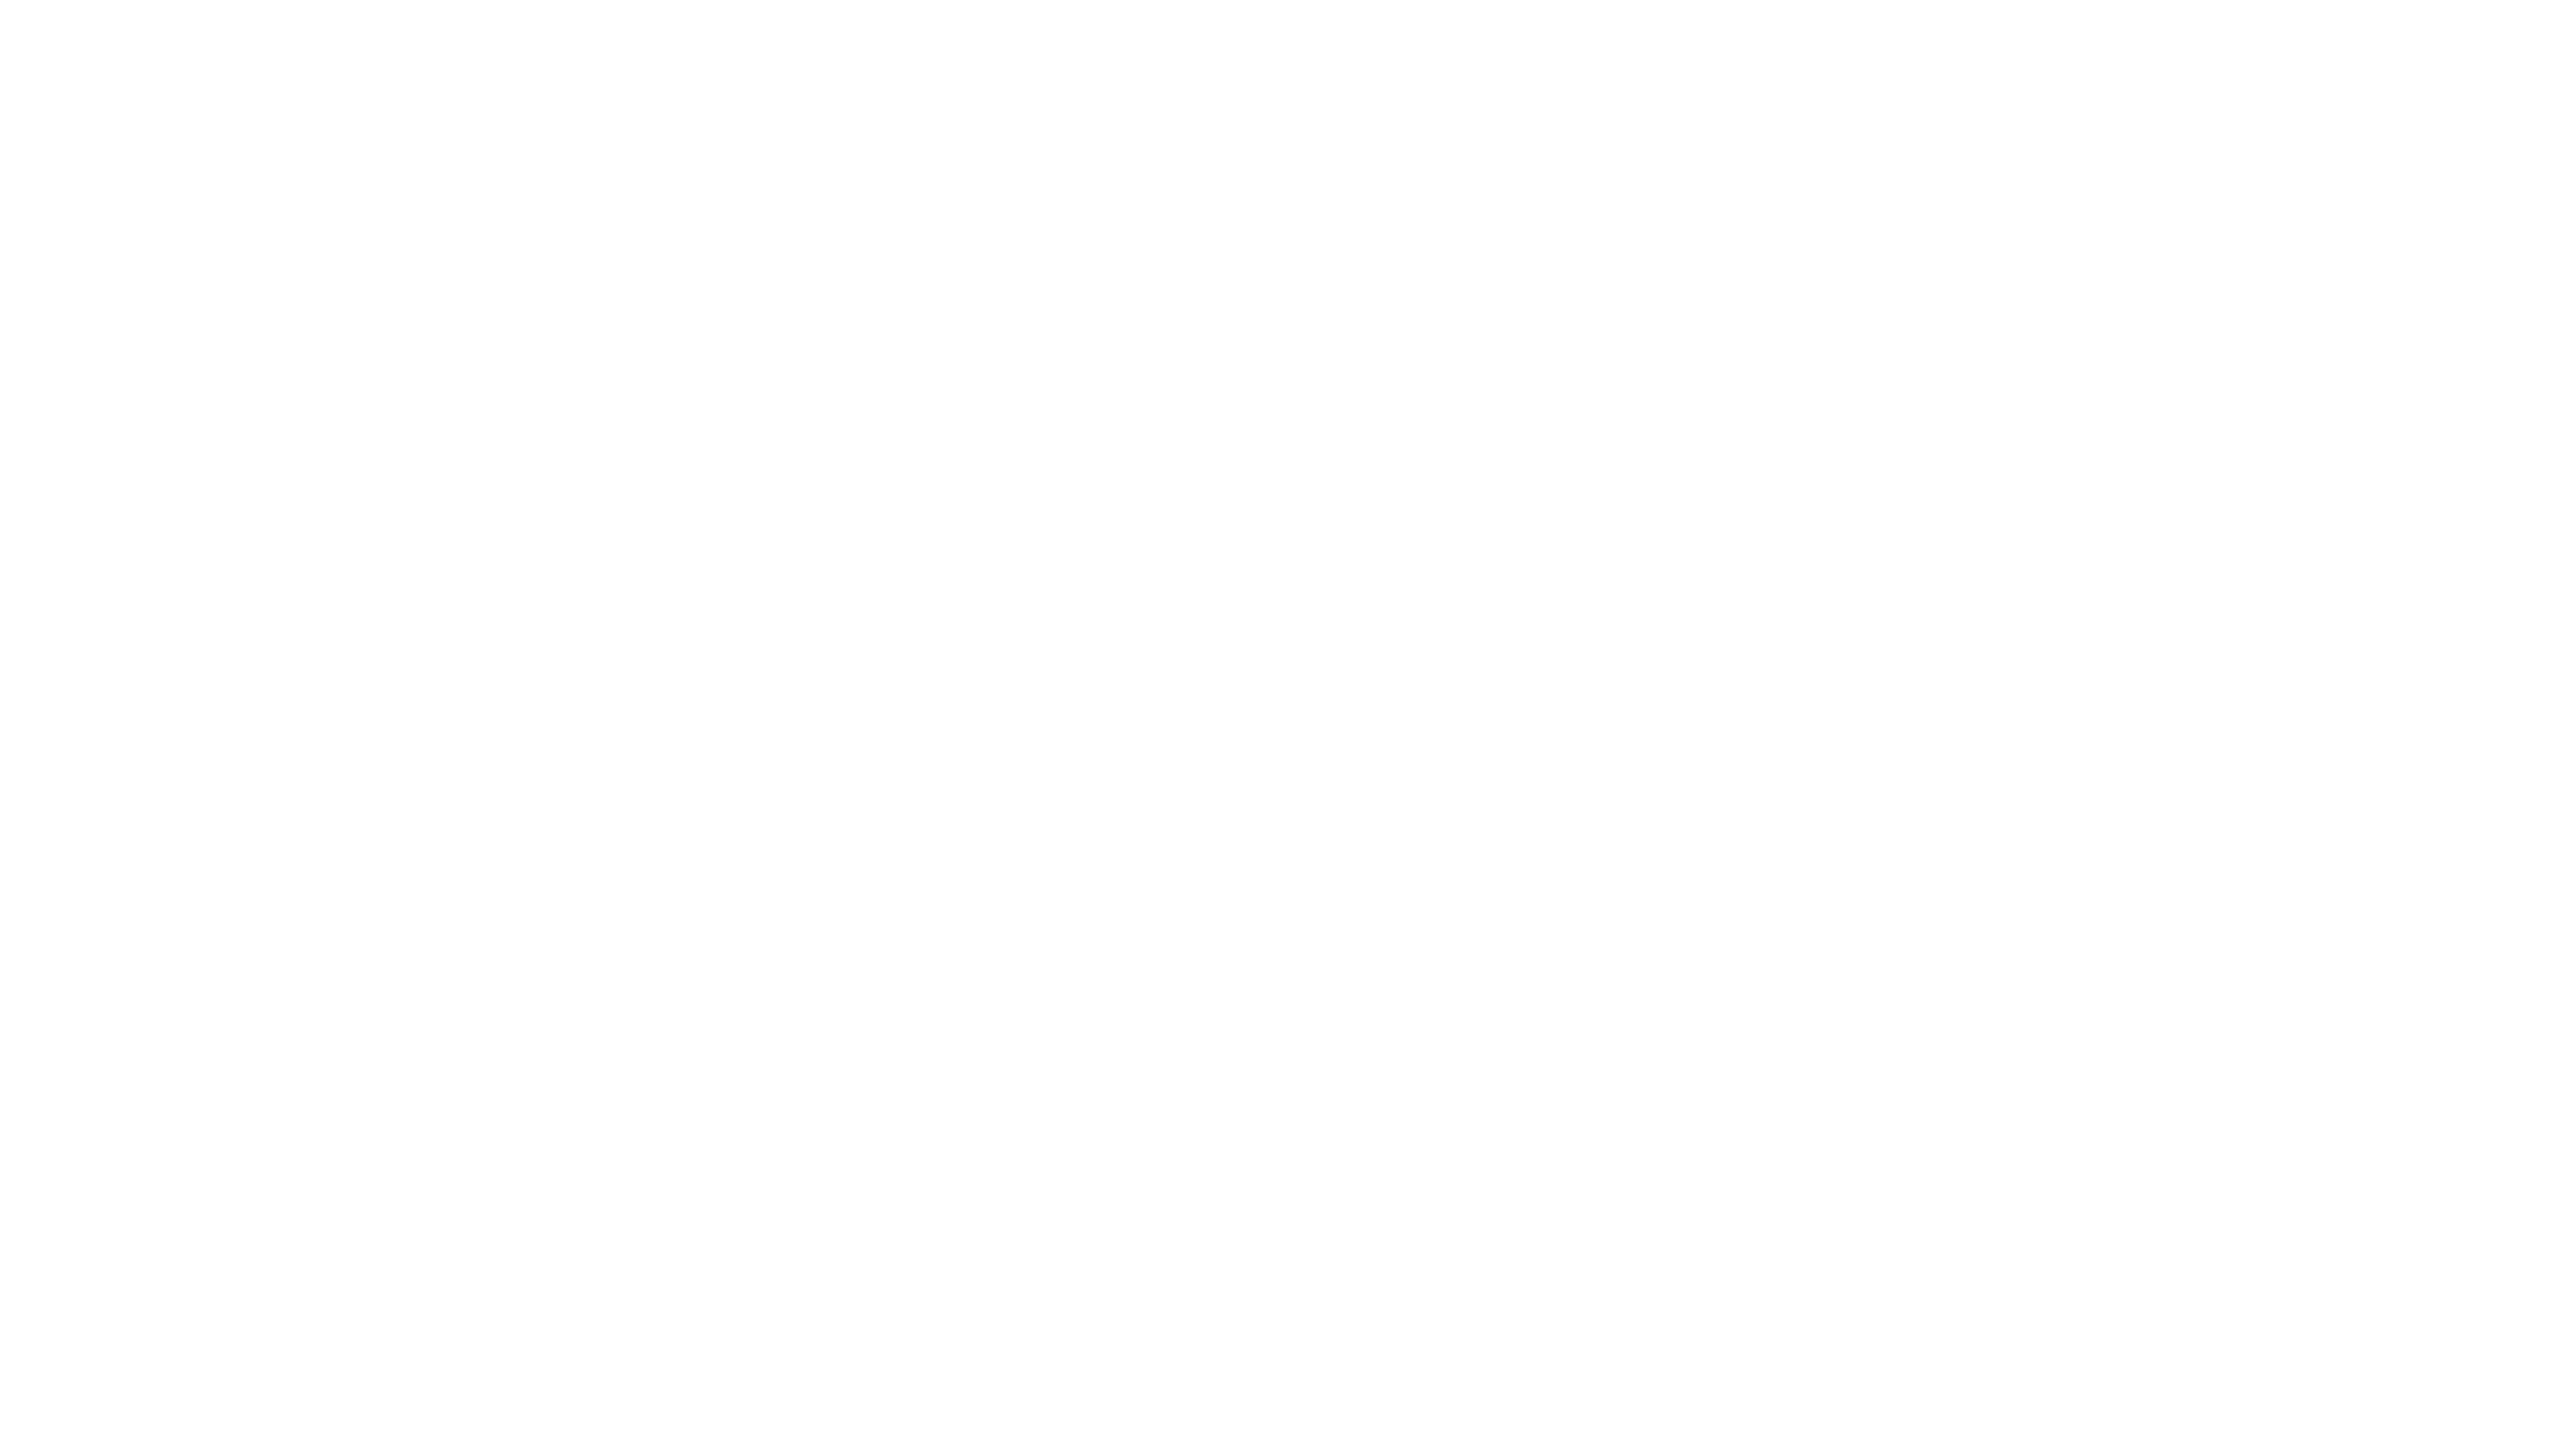 fs2-logo